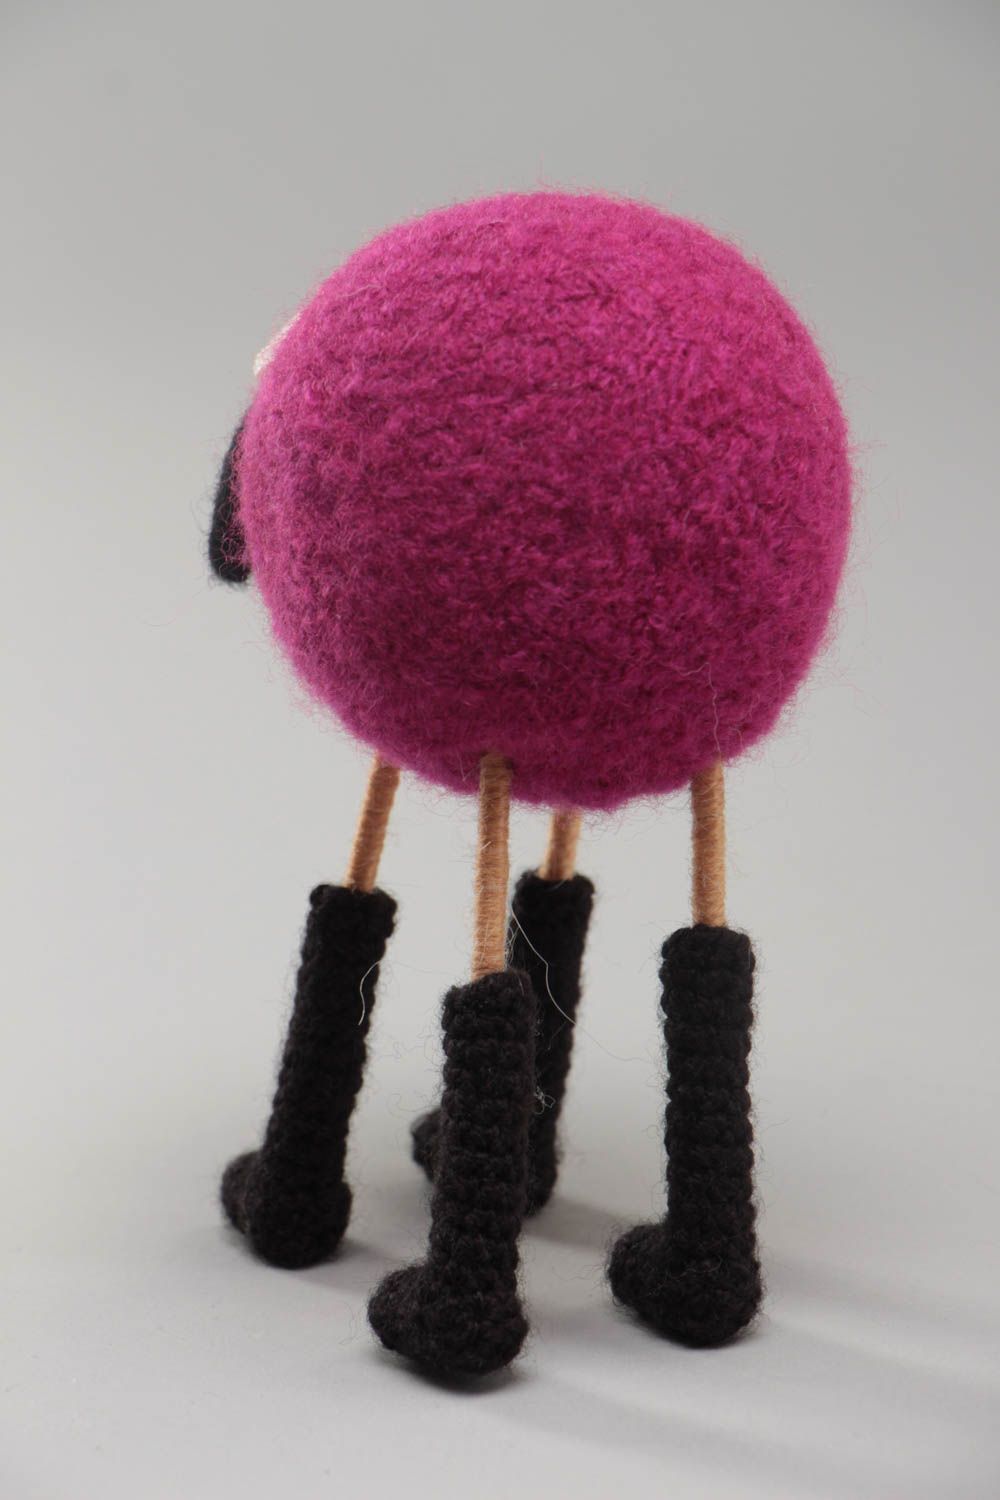 Мягкая вязаная игрушка овечка ручной работы авторская красивая малиновая с черным фото 4